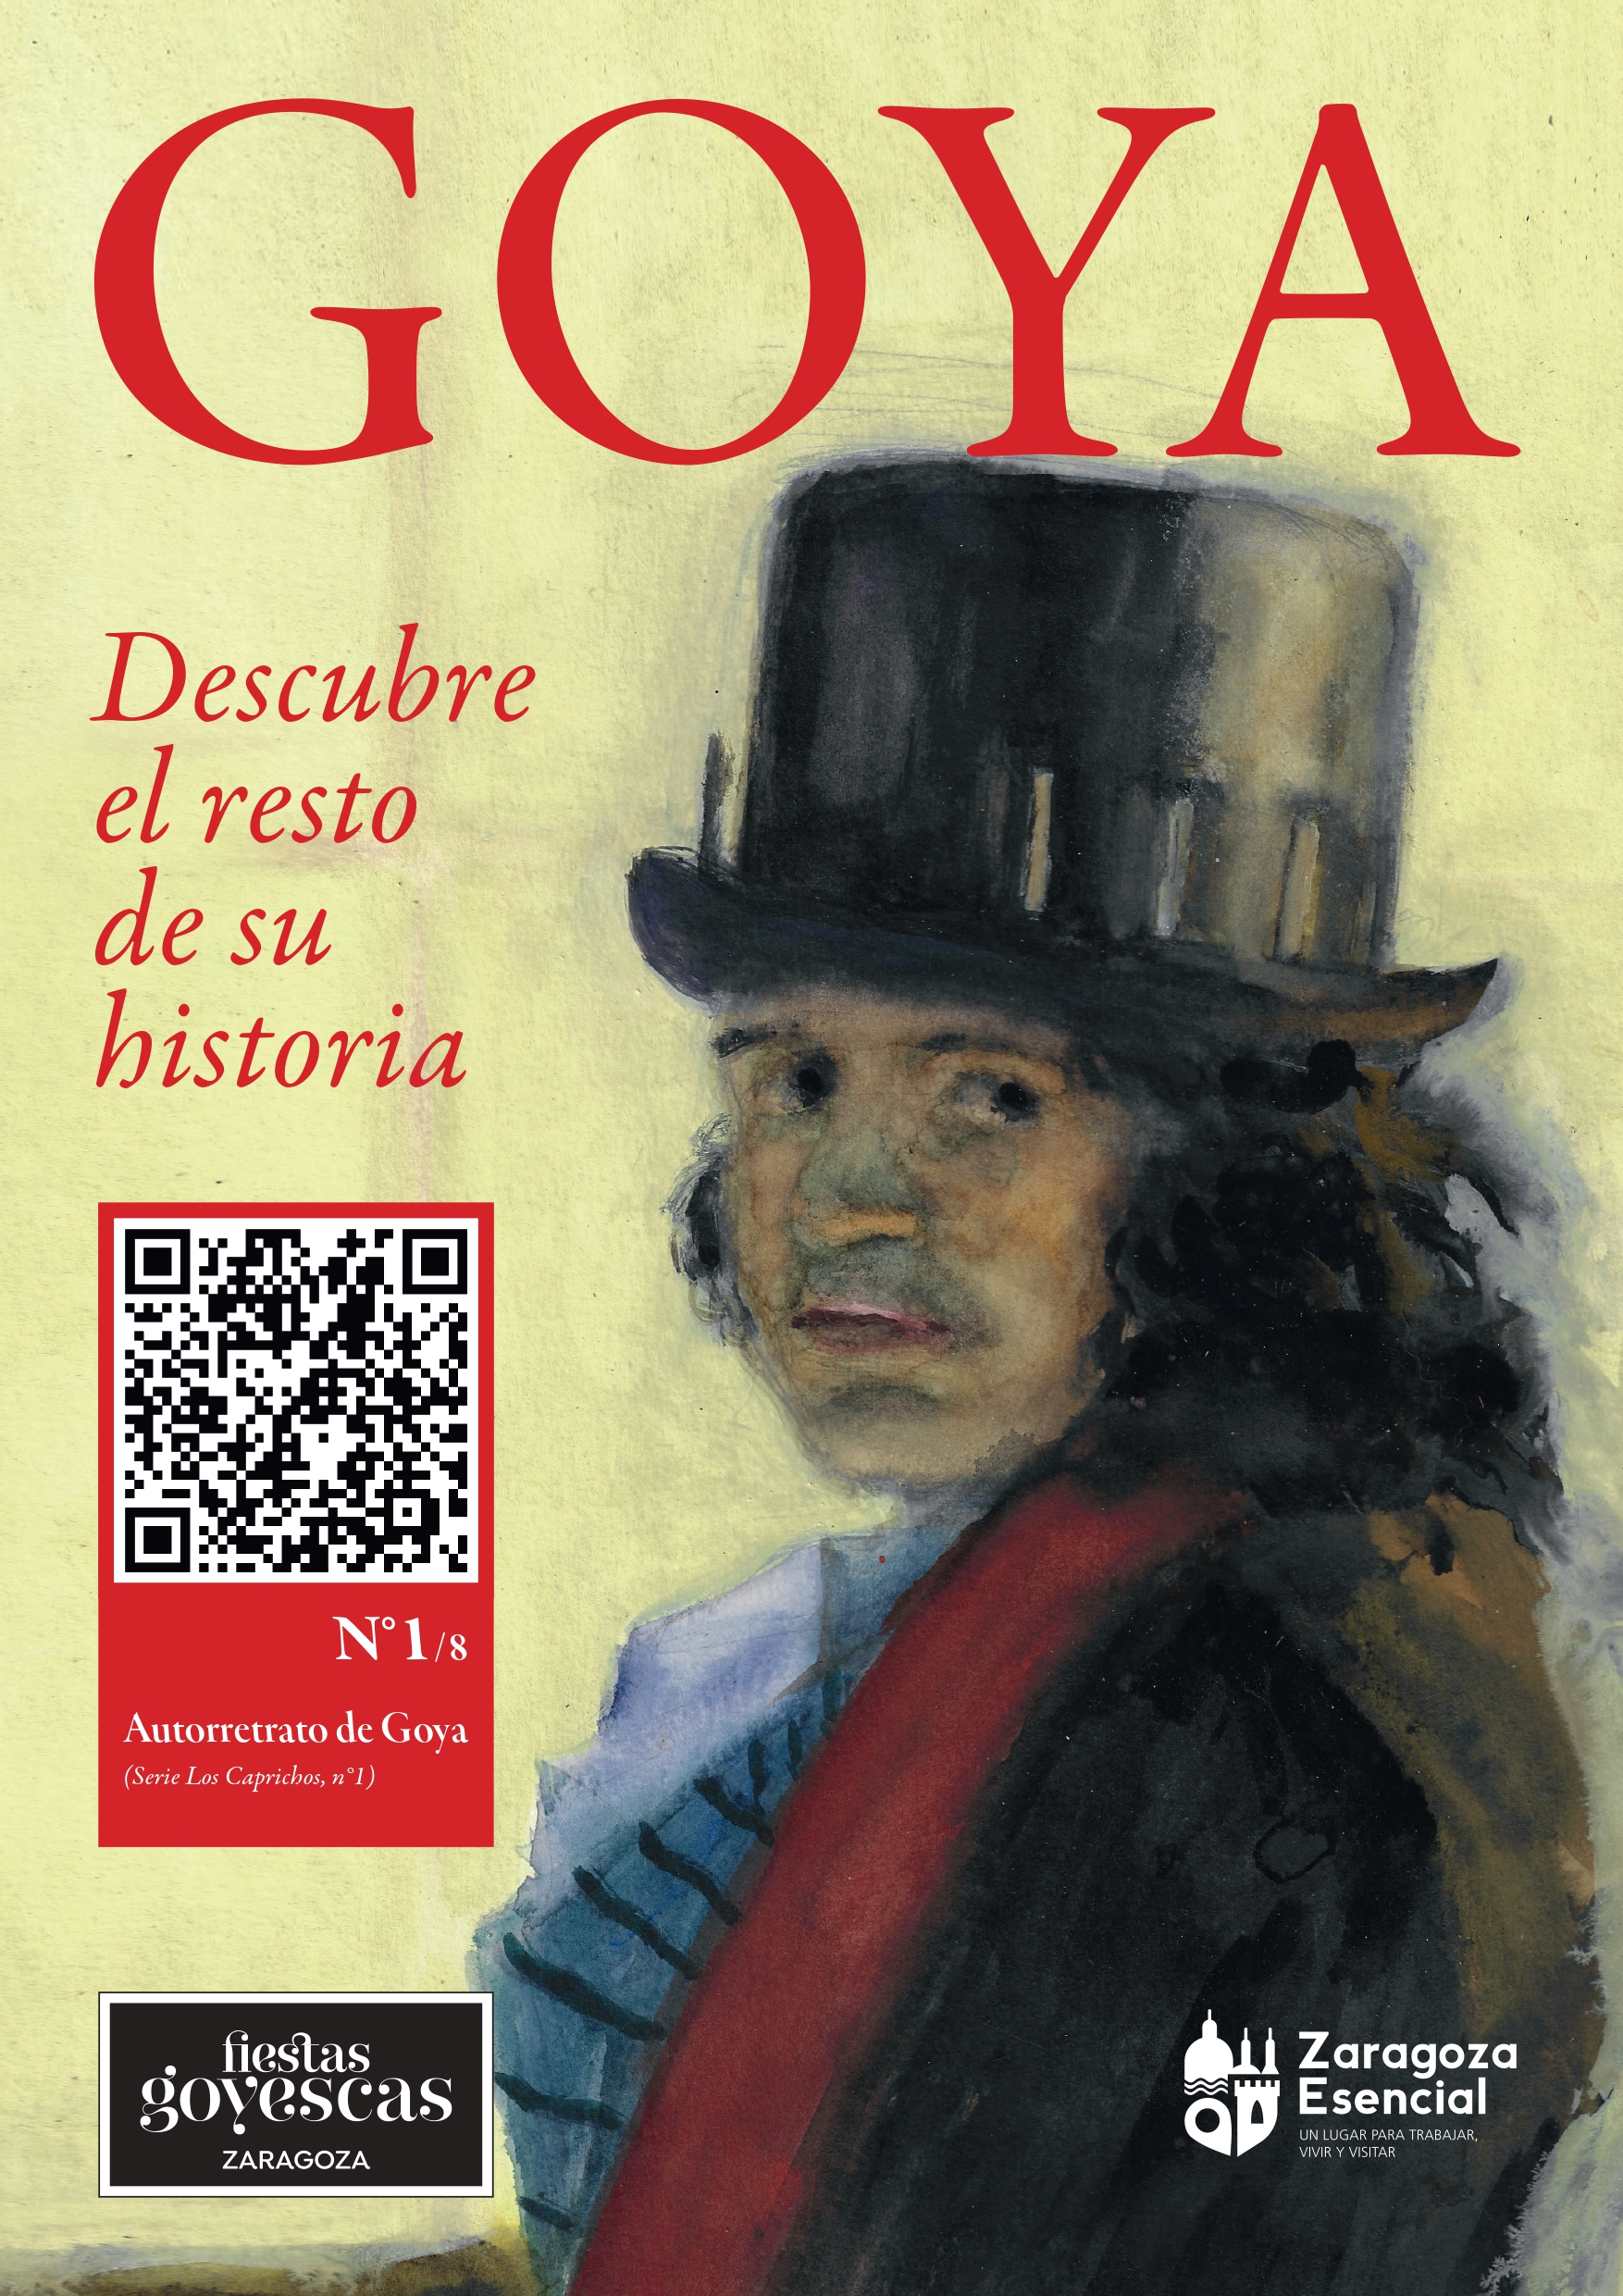 Vinilos Fiestas Goya_pages-to-jpg-0008